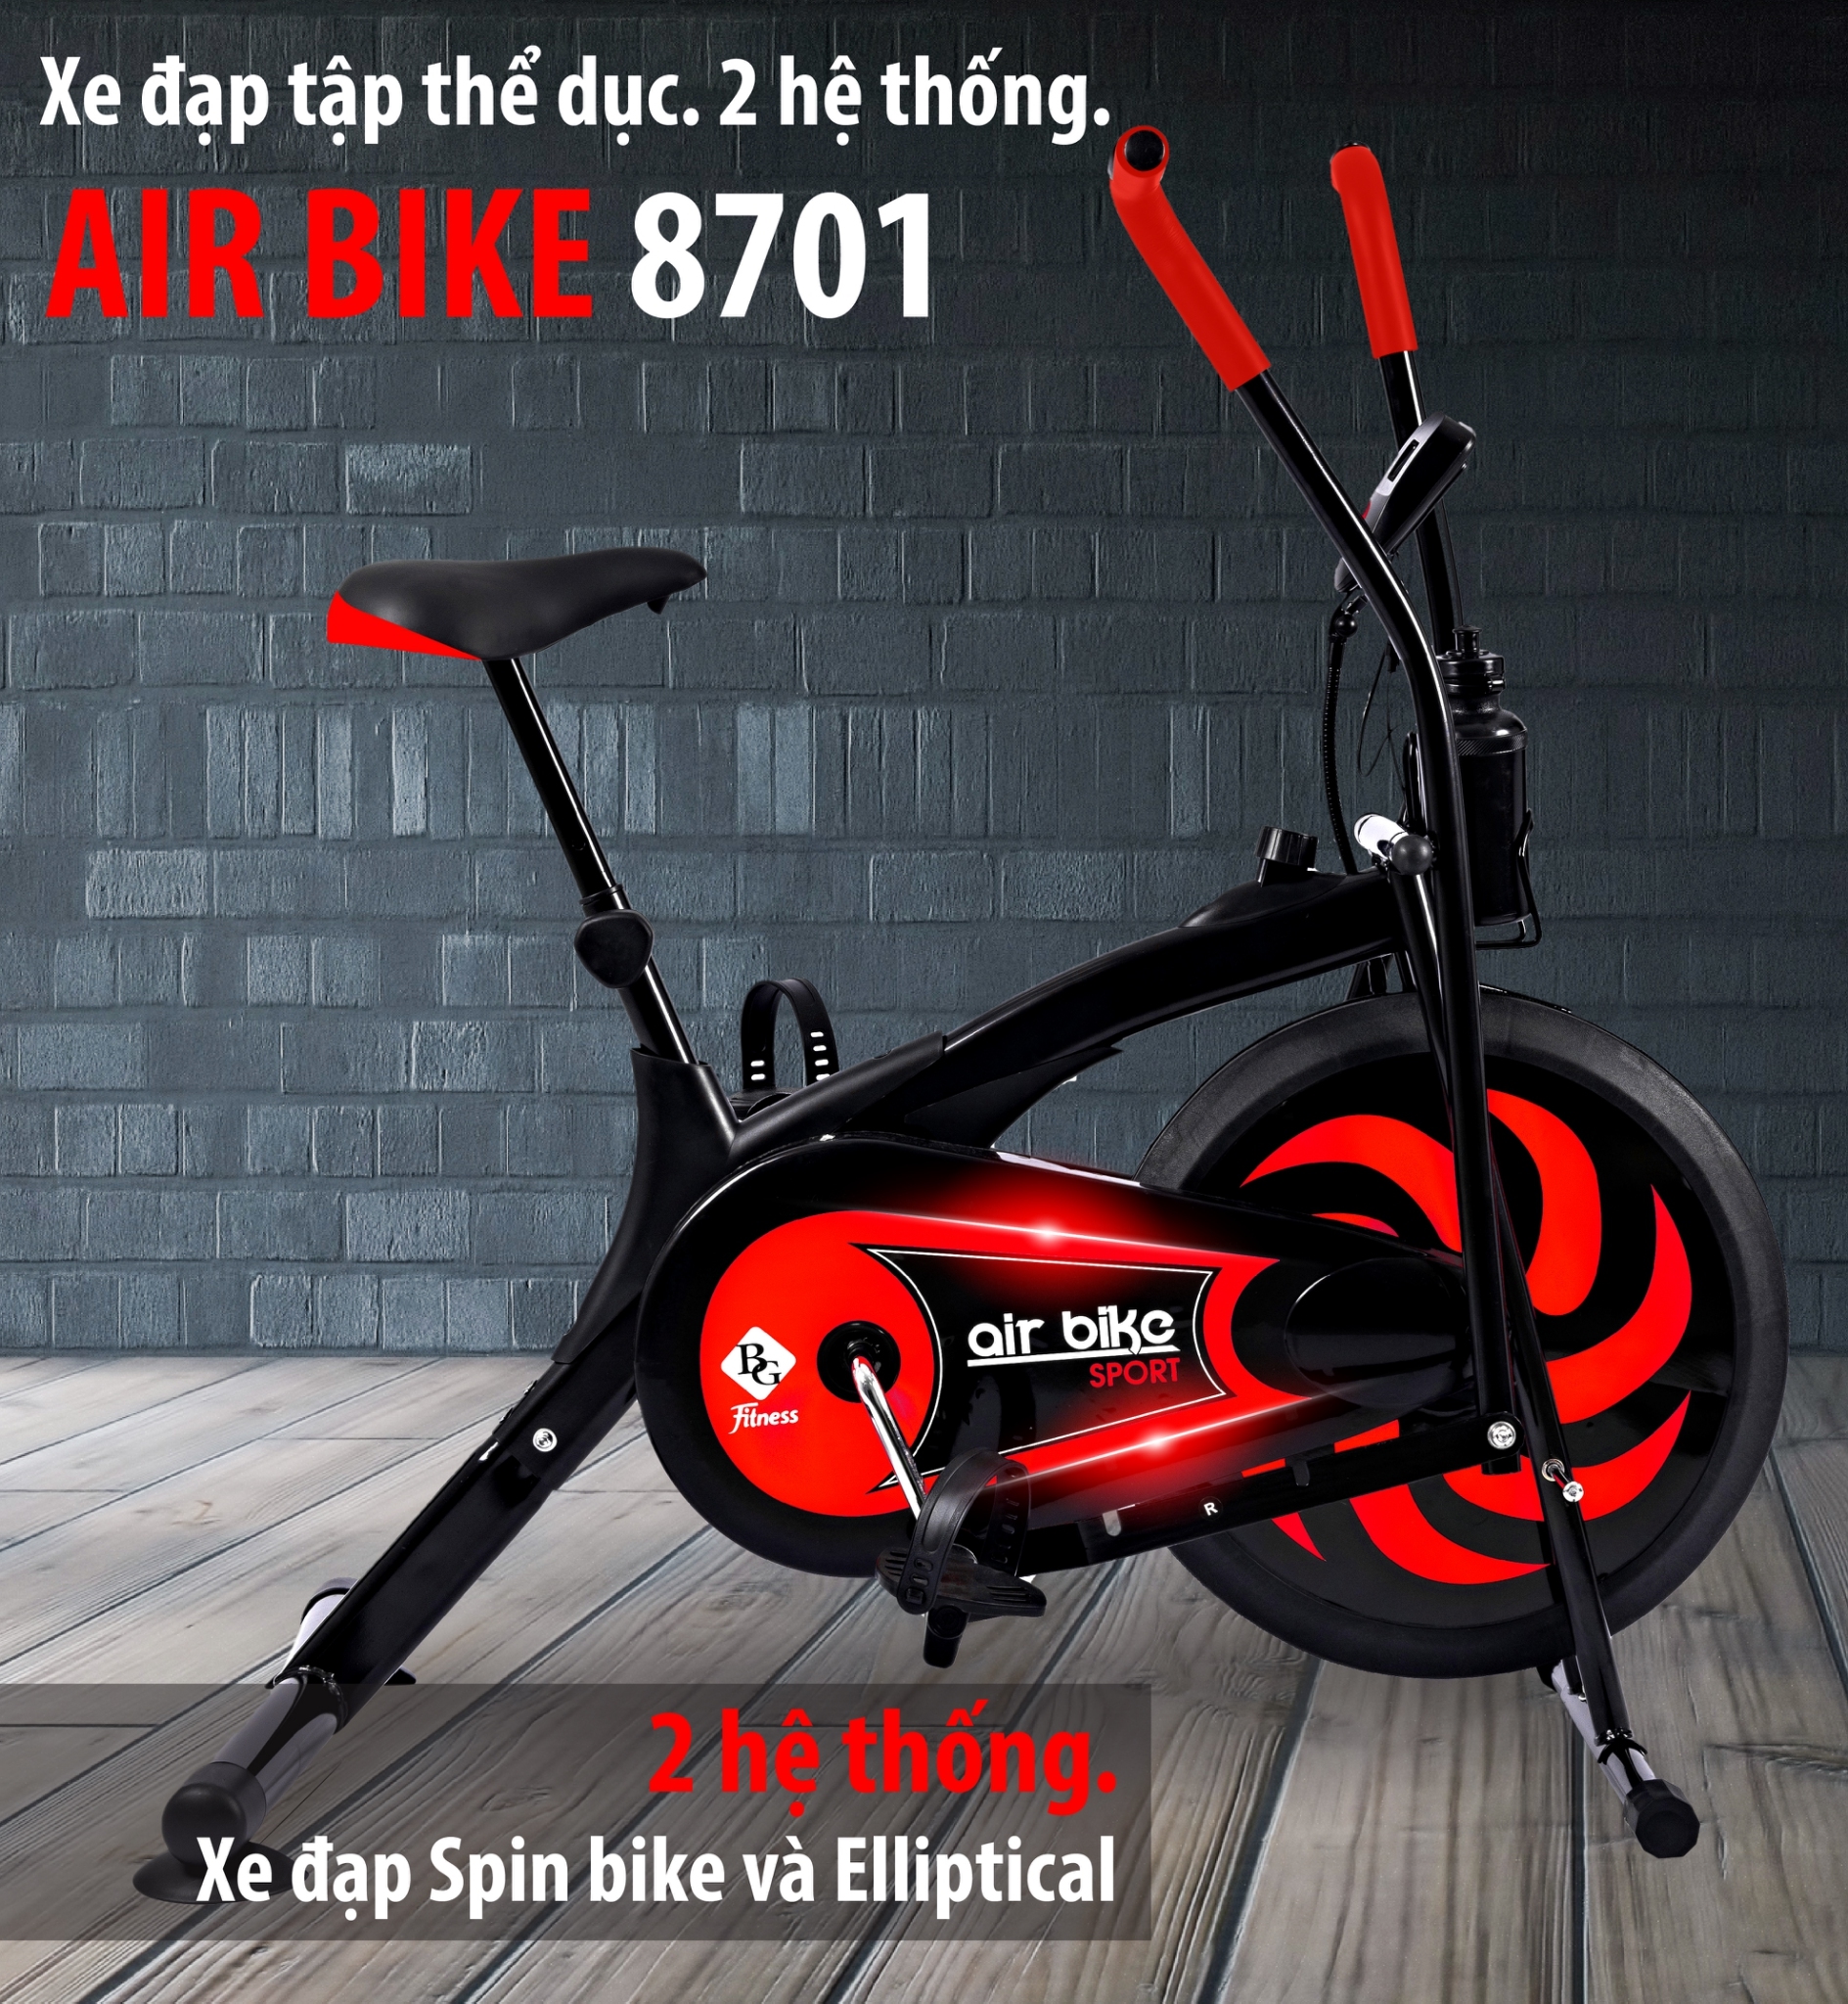 GYM19 - Xe đạp tập thể dục Air bike 8701 2 MÀU